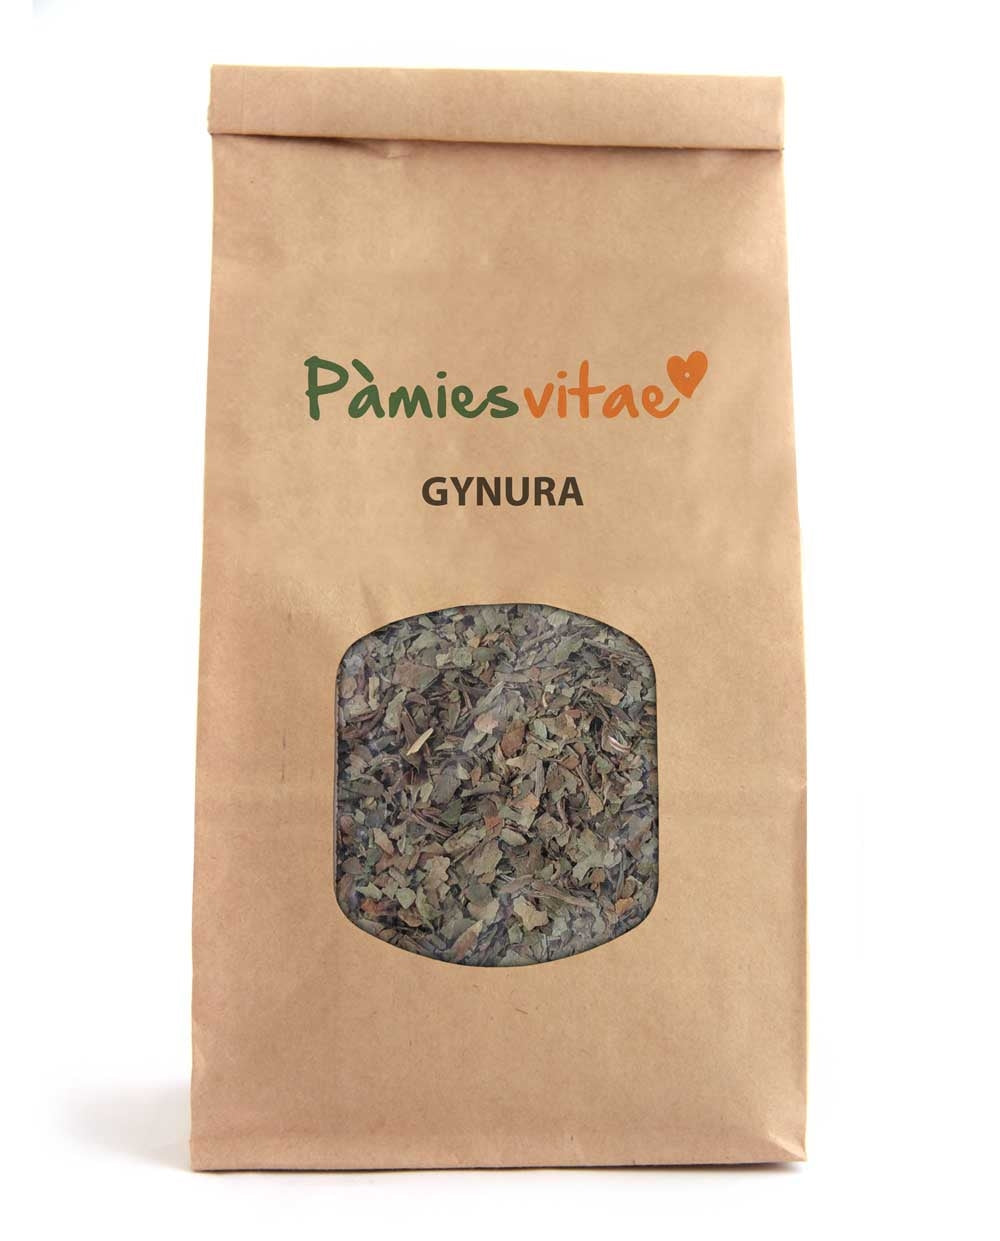 GYNURA - Gynura procumbens